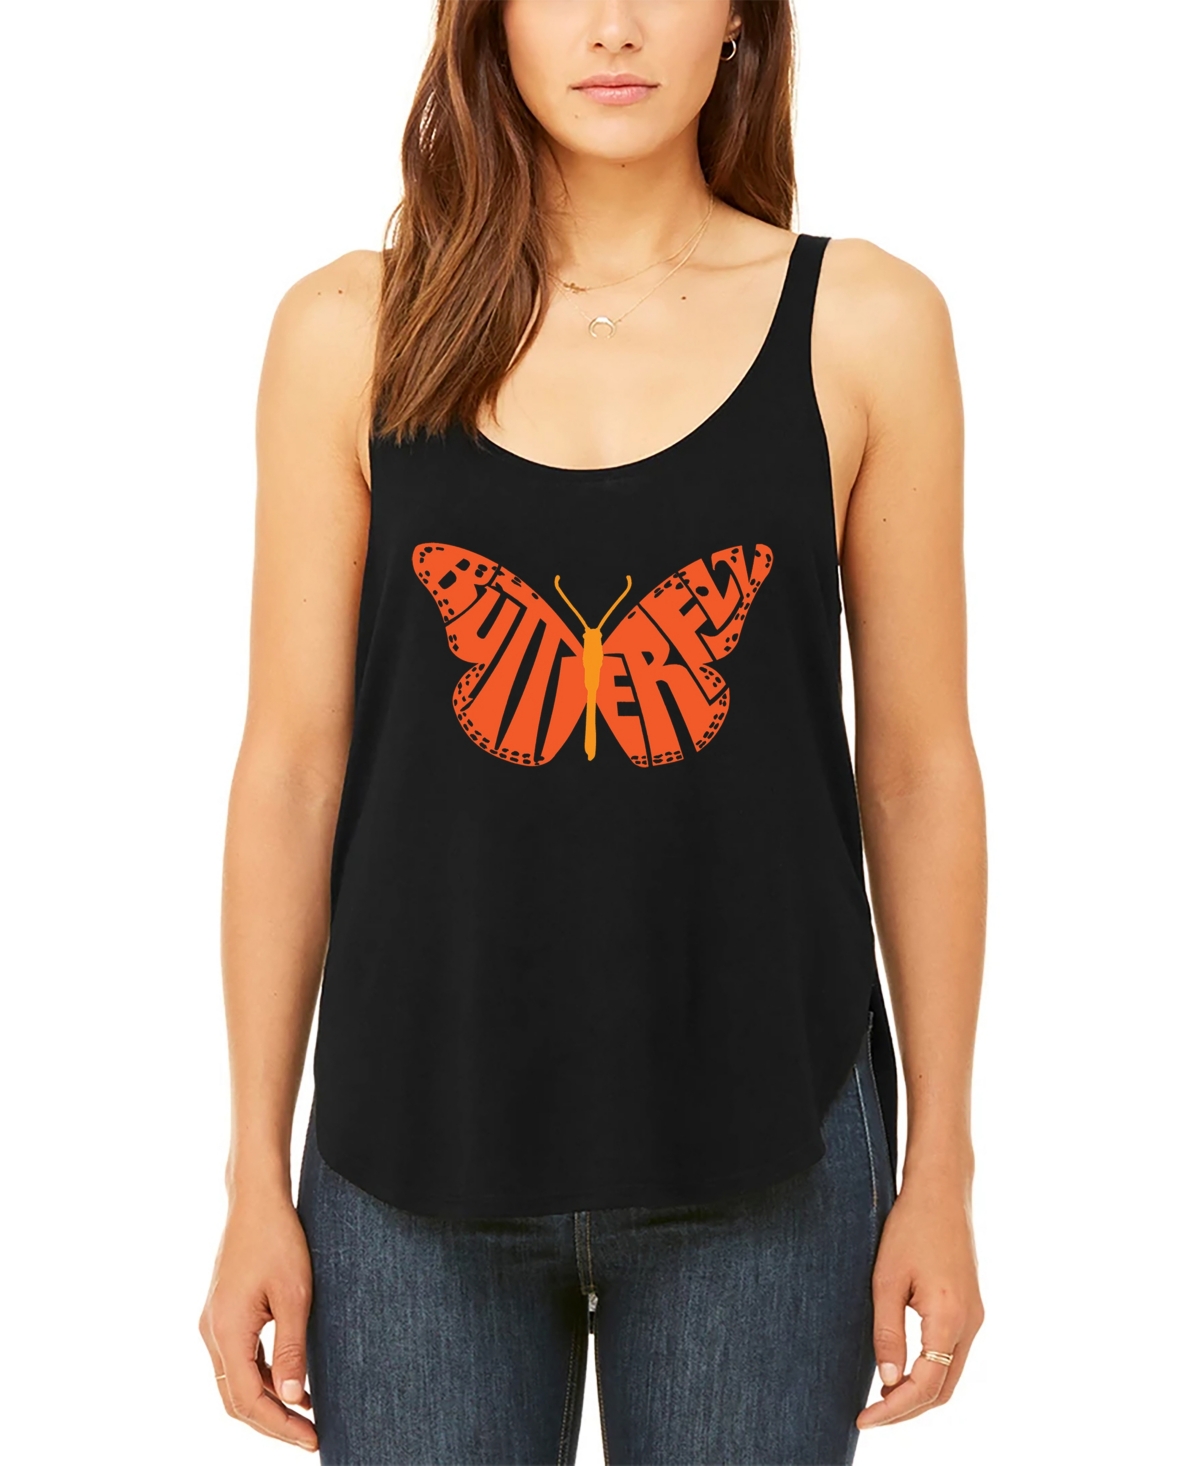 Women's Premium Word Art Butterfly Flowy Tank Top - Black